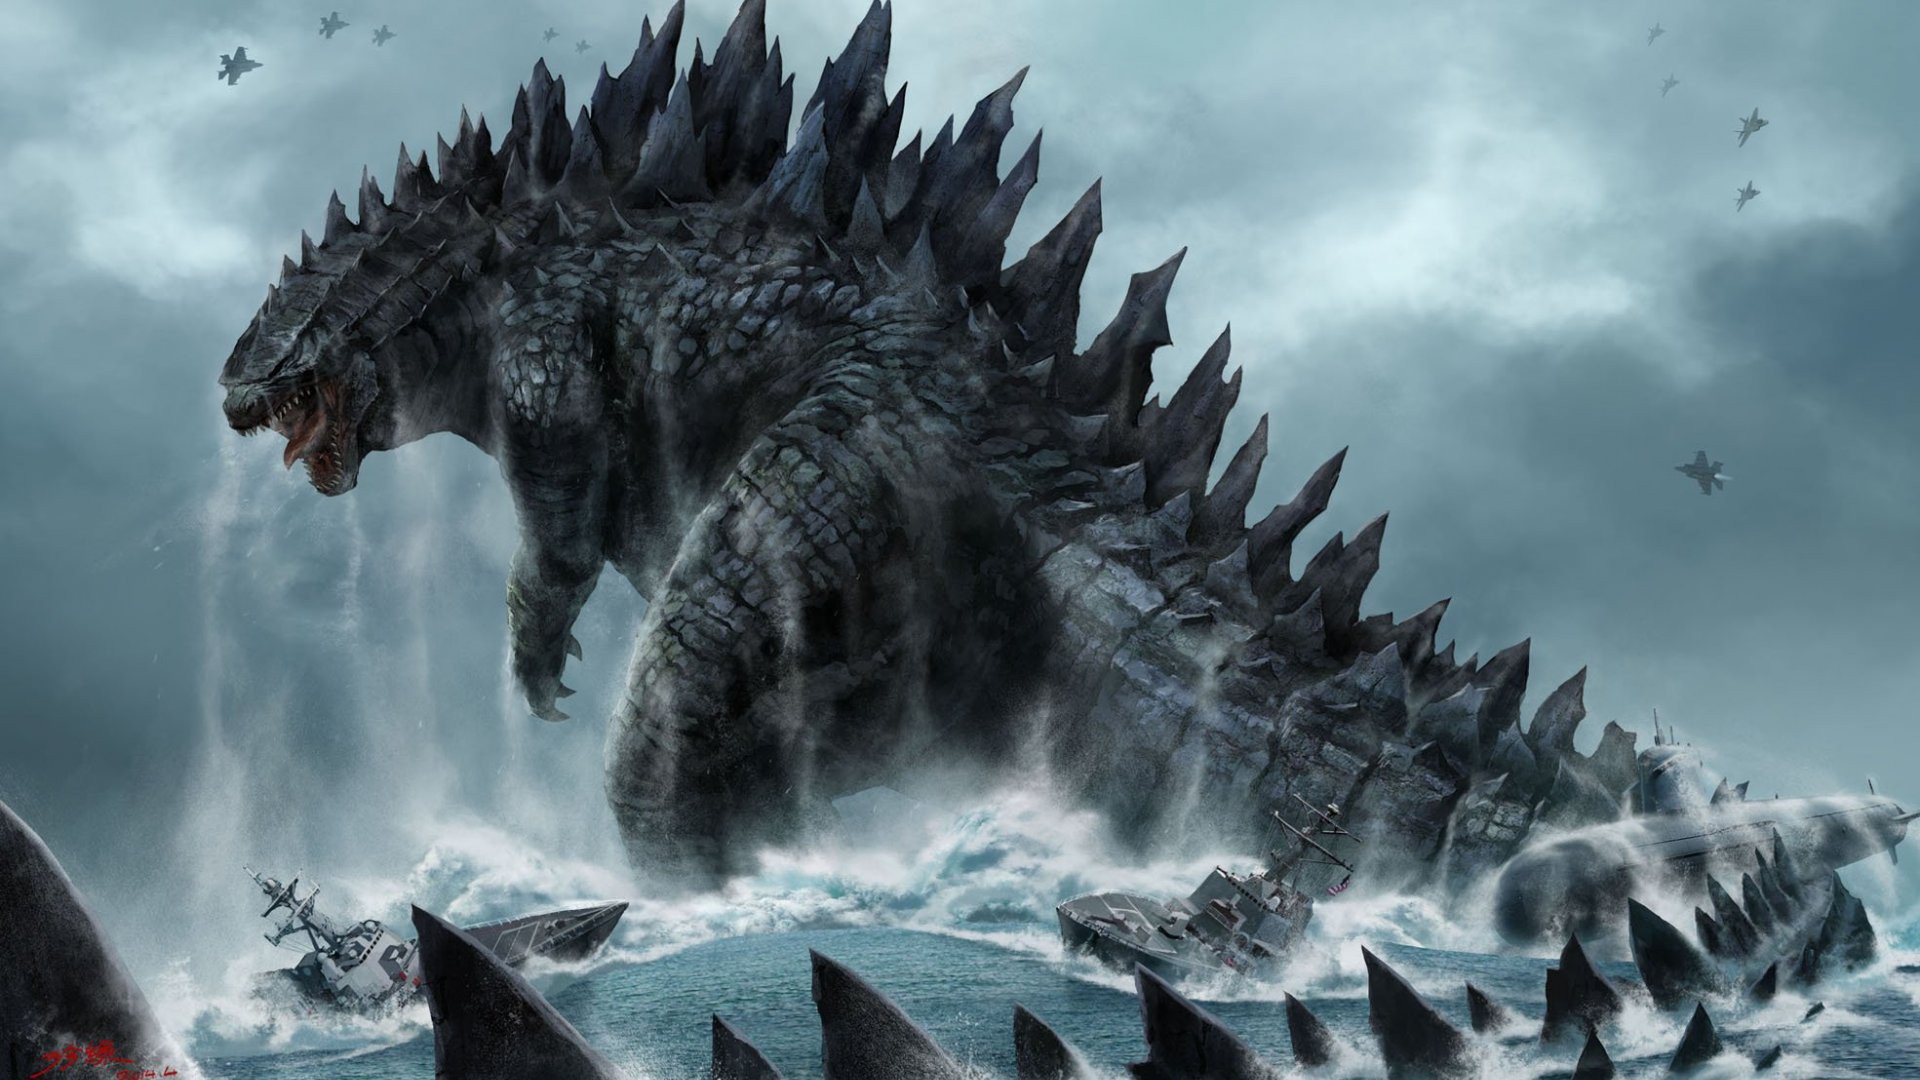 Từ chính ngôi sao của phim chiếu rạp đến máy tính của bạn, hãy cùng nhau chiêm ngưỡng những hình ảnh tuyệt đẹp của Godzilla. Với đầy đủ các kích thước và màu sắc, bạn có thể trang trí cho màn hình của mình với bất kỳ hình ảnh nào trông thật đẹp mắt.